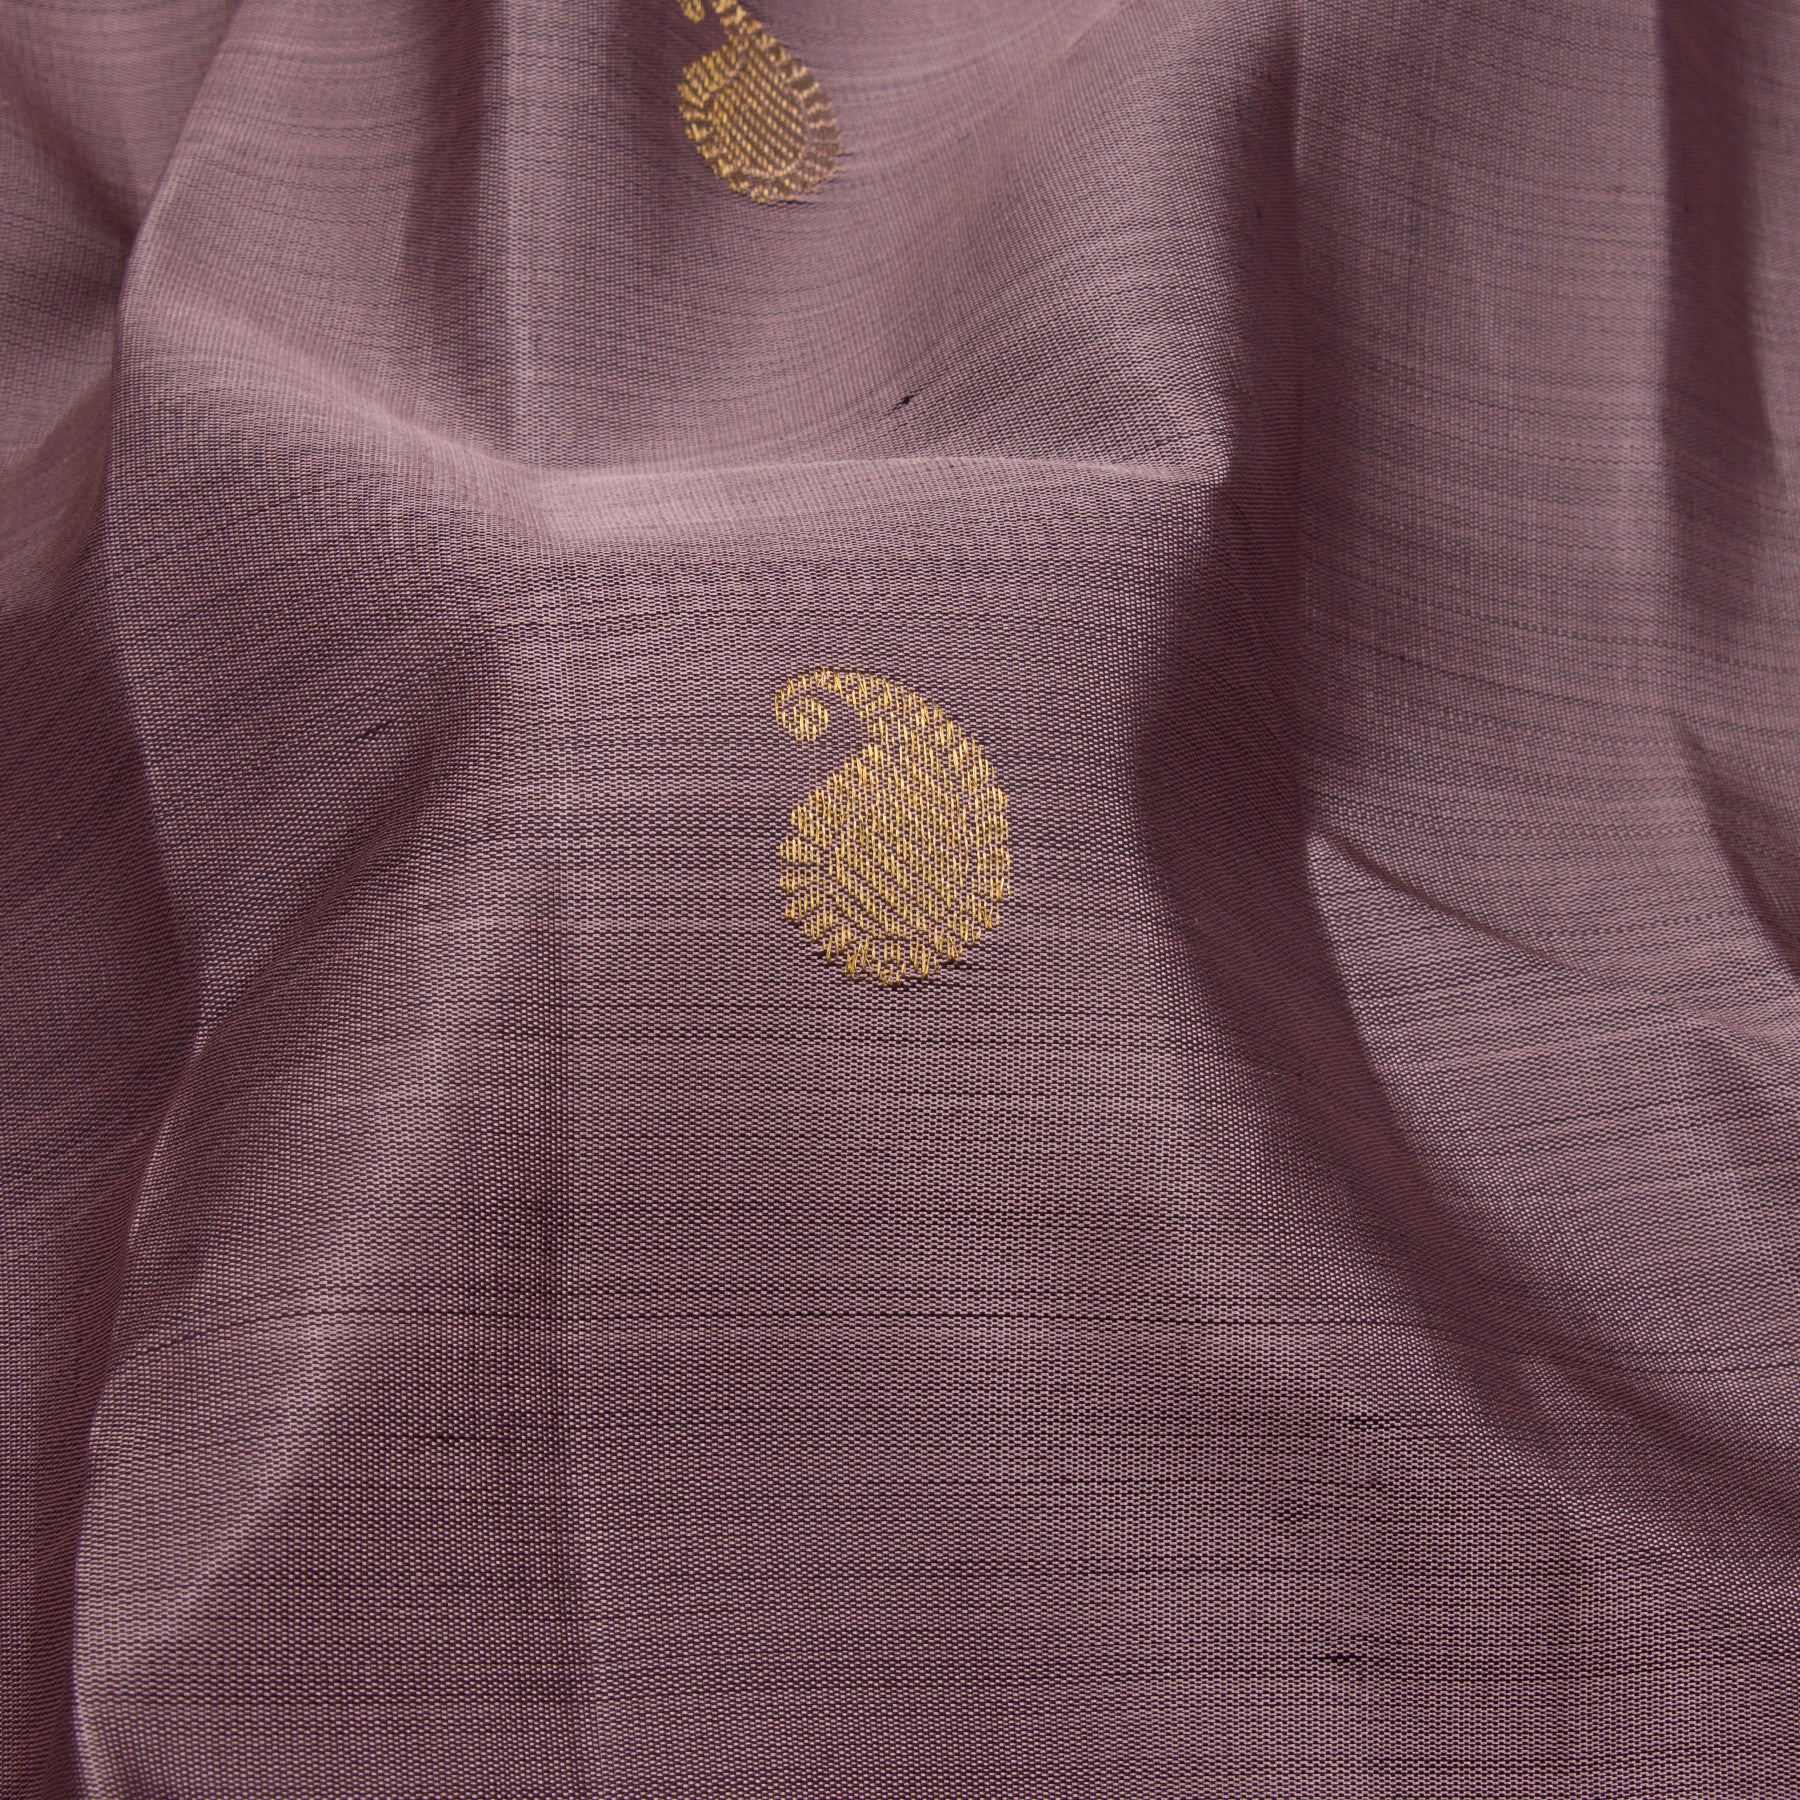 Kanakavalli Kanjivaram Silk Sari 23-595-HS001-12752 - Fabric View